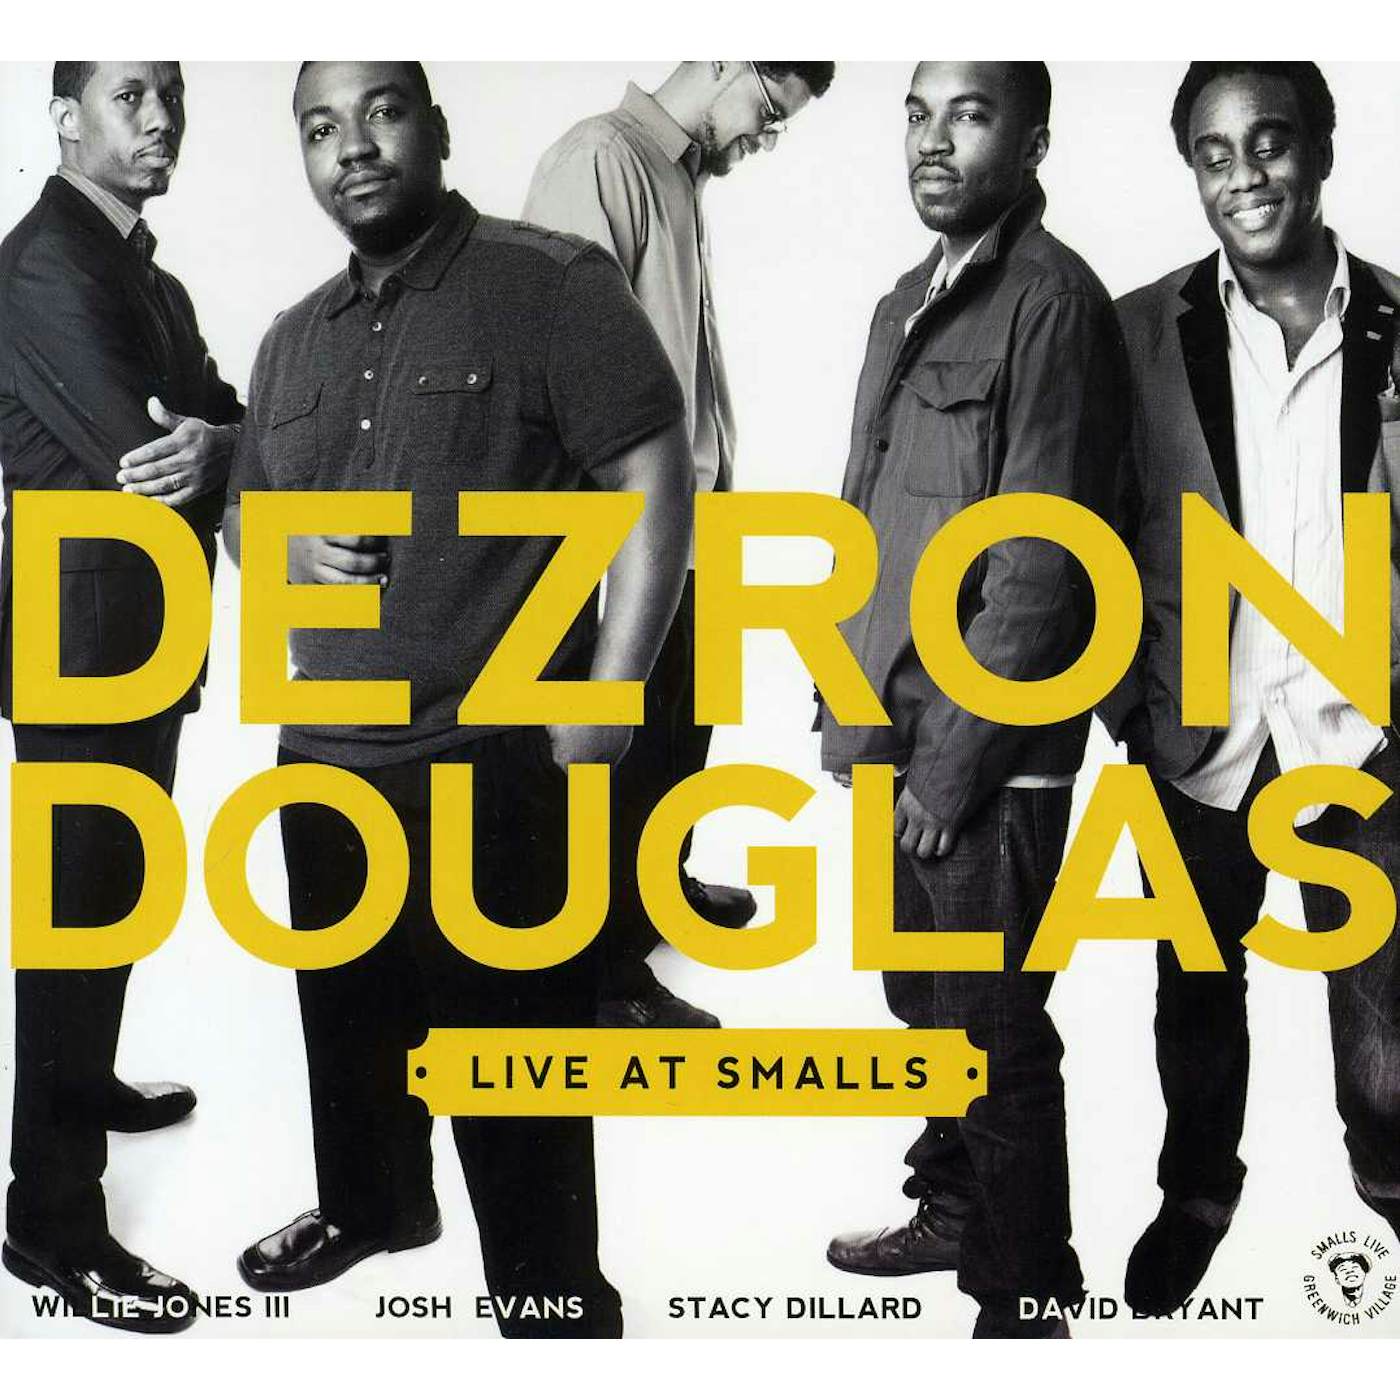 Dezron Douglas LIVE AT SMALLS CD